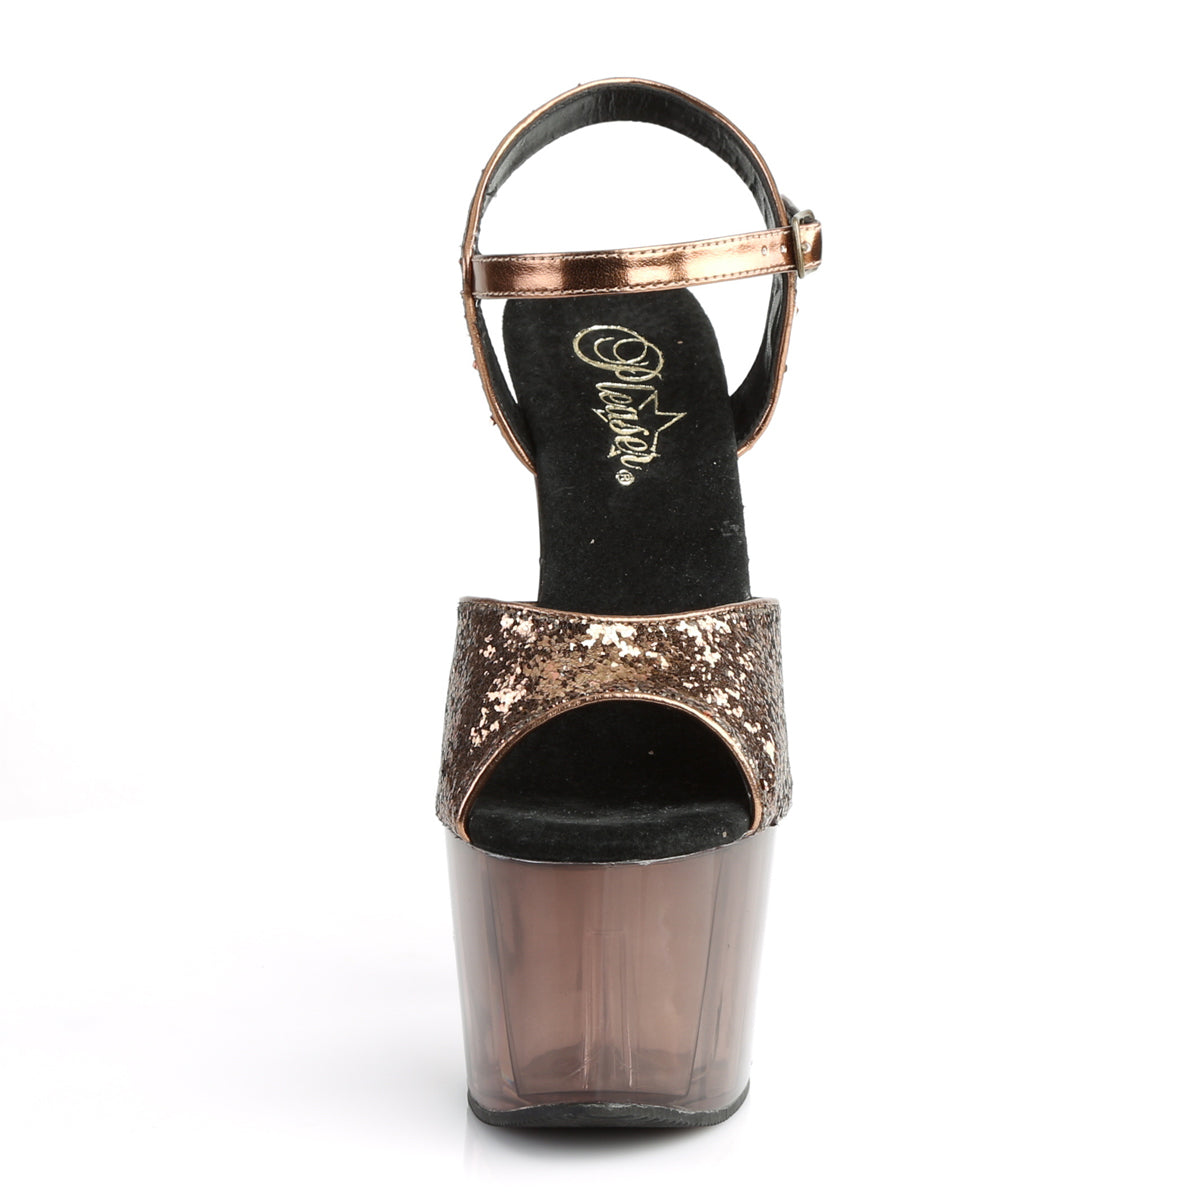 Pleaser Womens Sandals ADORE-710GT Bronze Glitter/Bronze Tinted